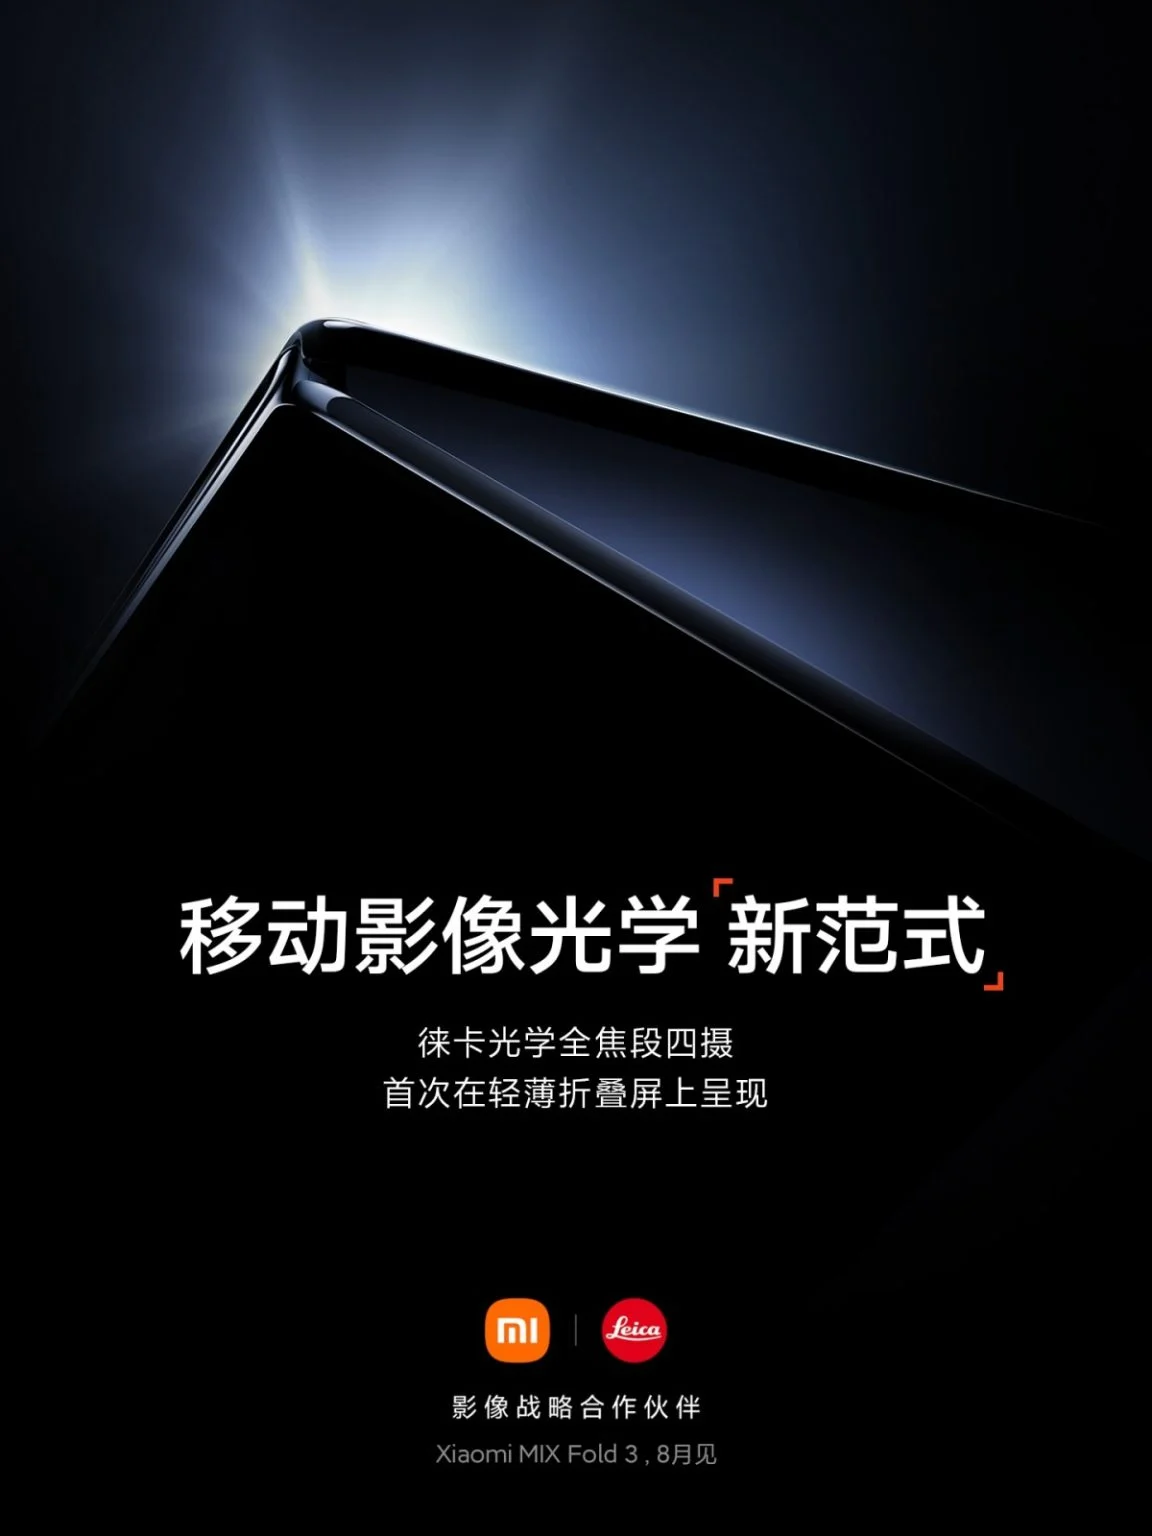 Xiaomi MIX Fold 3 Siap Meluncur Agustus Tahun Ini